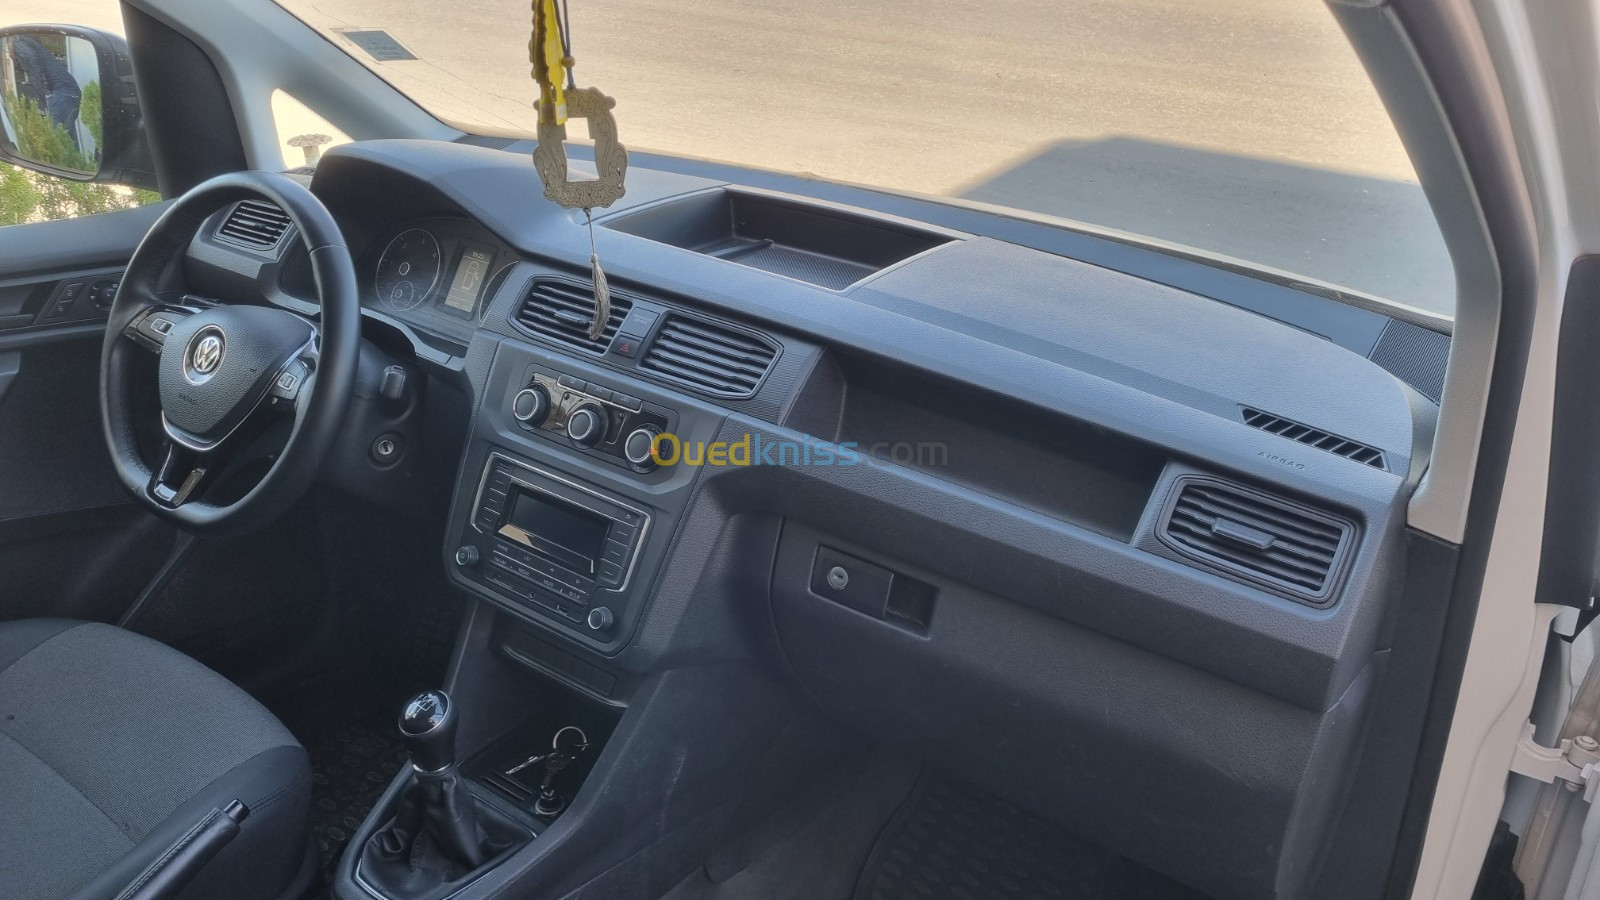 Volkswagen Caddy 2019 Commercial